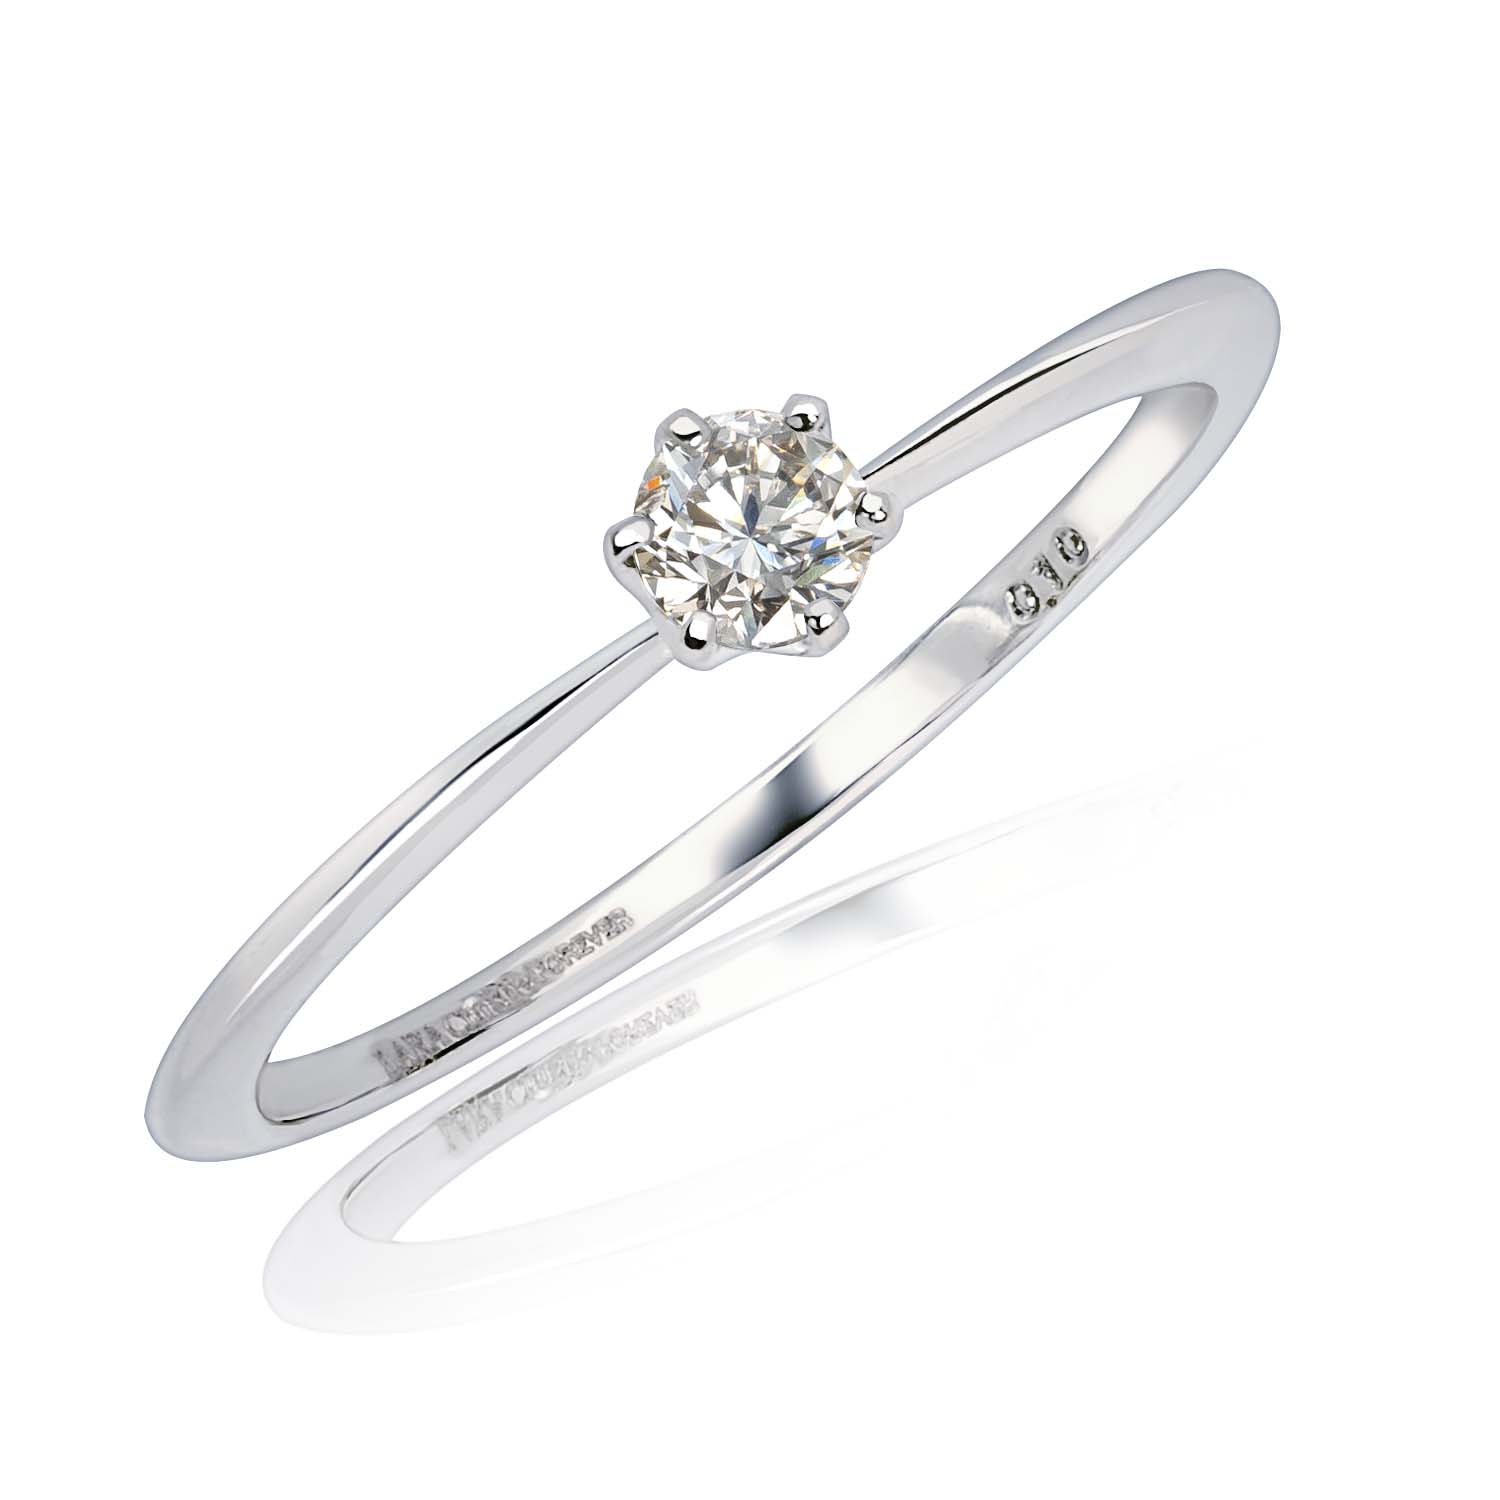 婚約指輪 ダイヤ プラチナ900 レディース ダイヤモンド 0.1ct エンゲージリング 指輪 FOREVER PT900 LPUC ララクリスティー